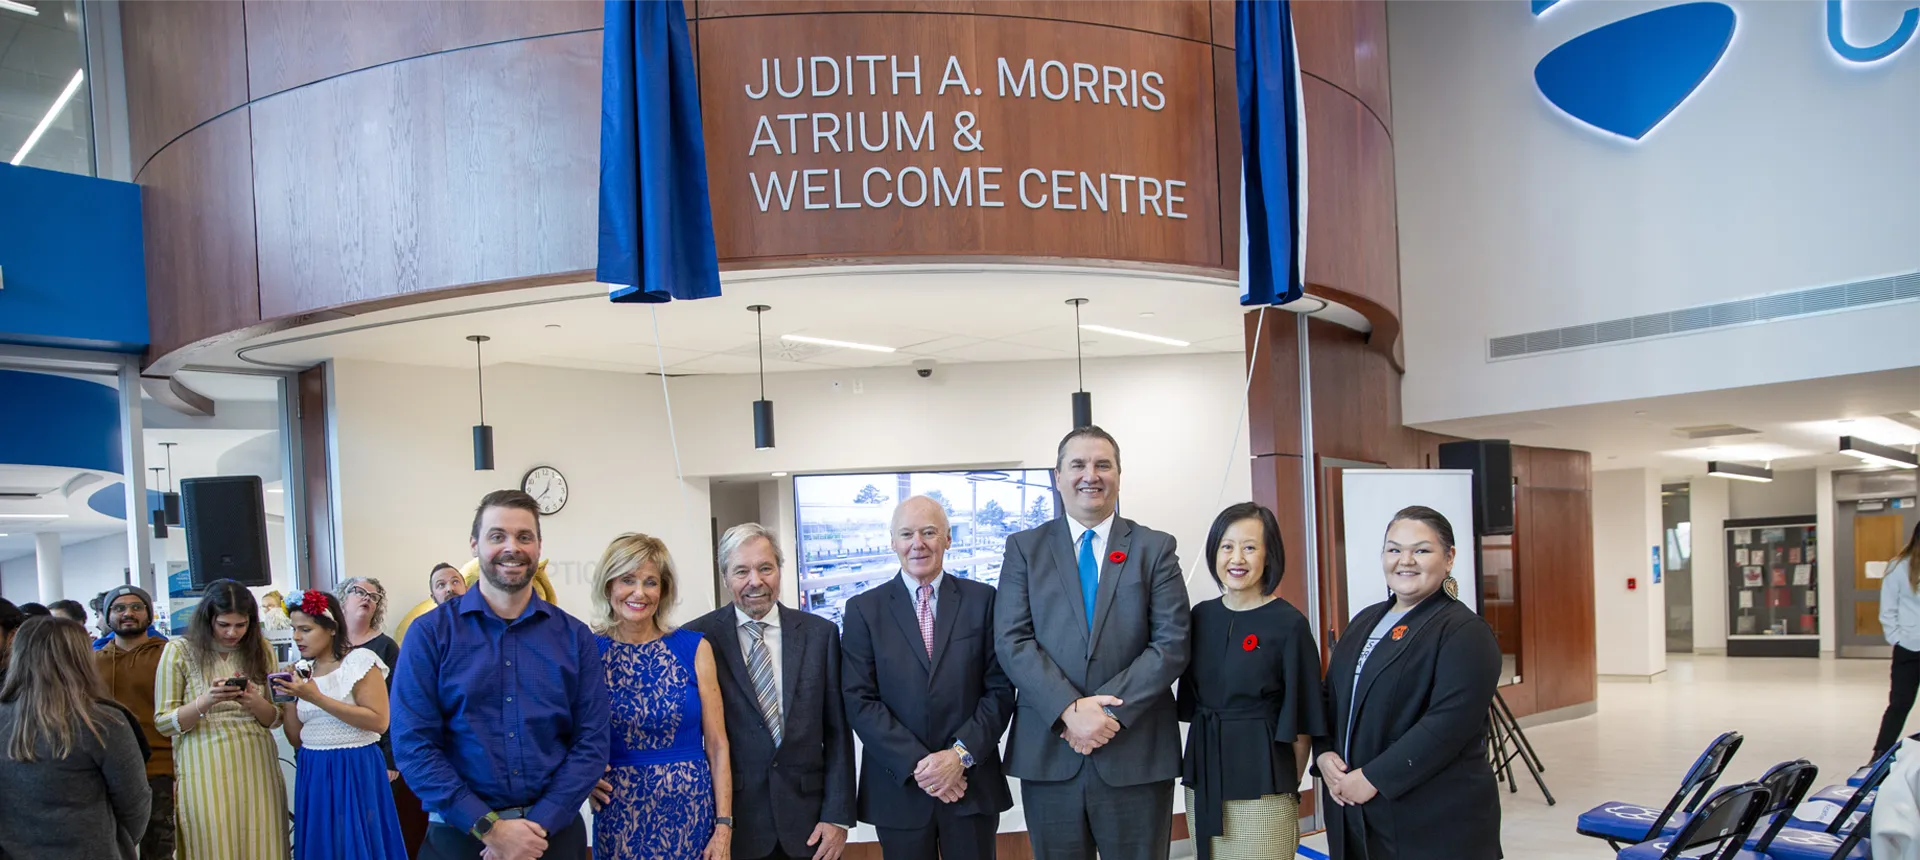 Lambton College Celebrates Opening of New Judith Morris Atrium